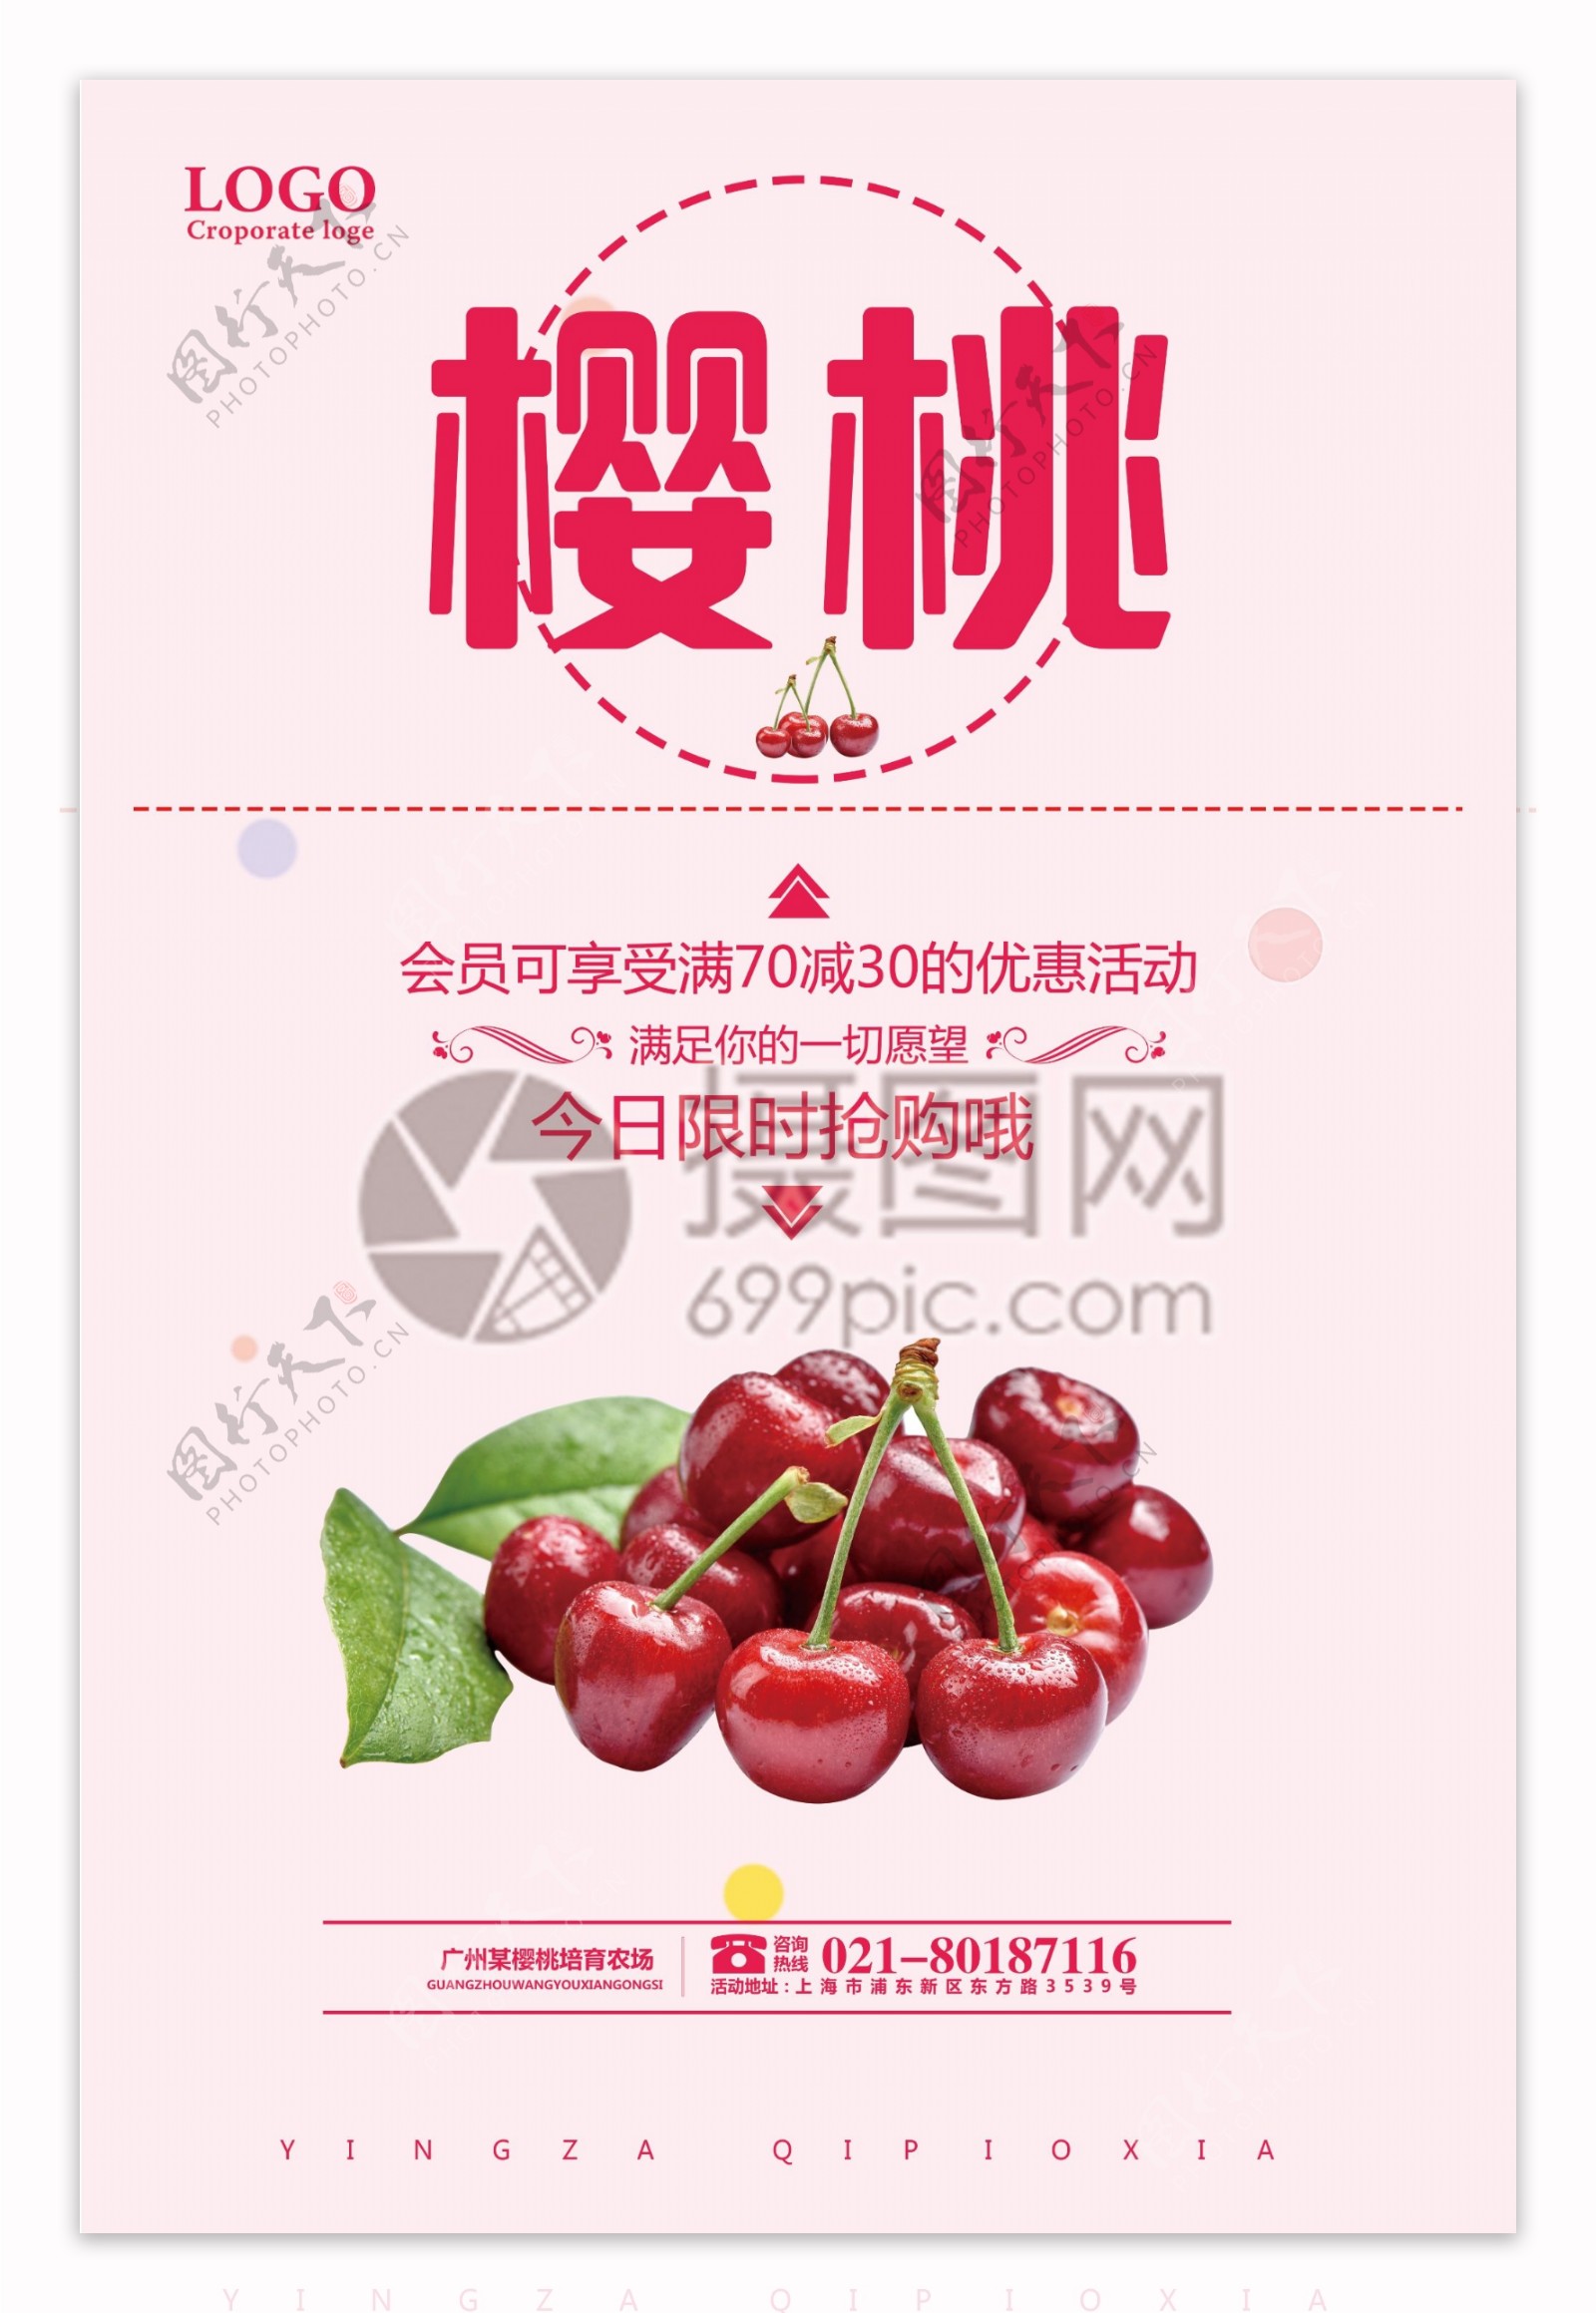 樱桃水果海报设计